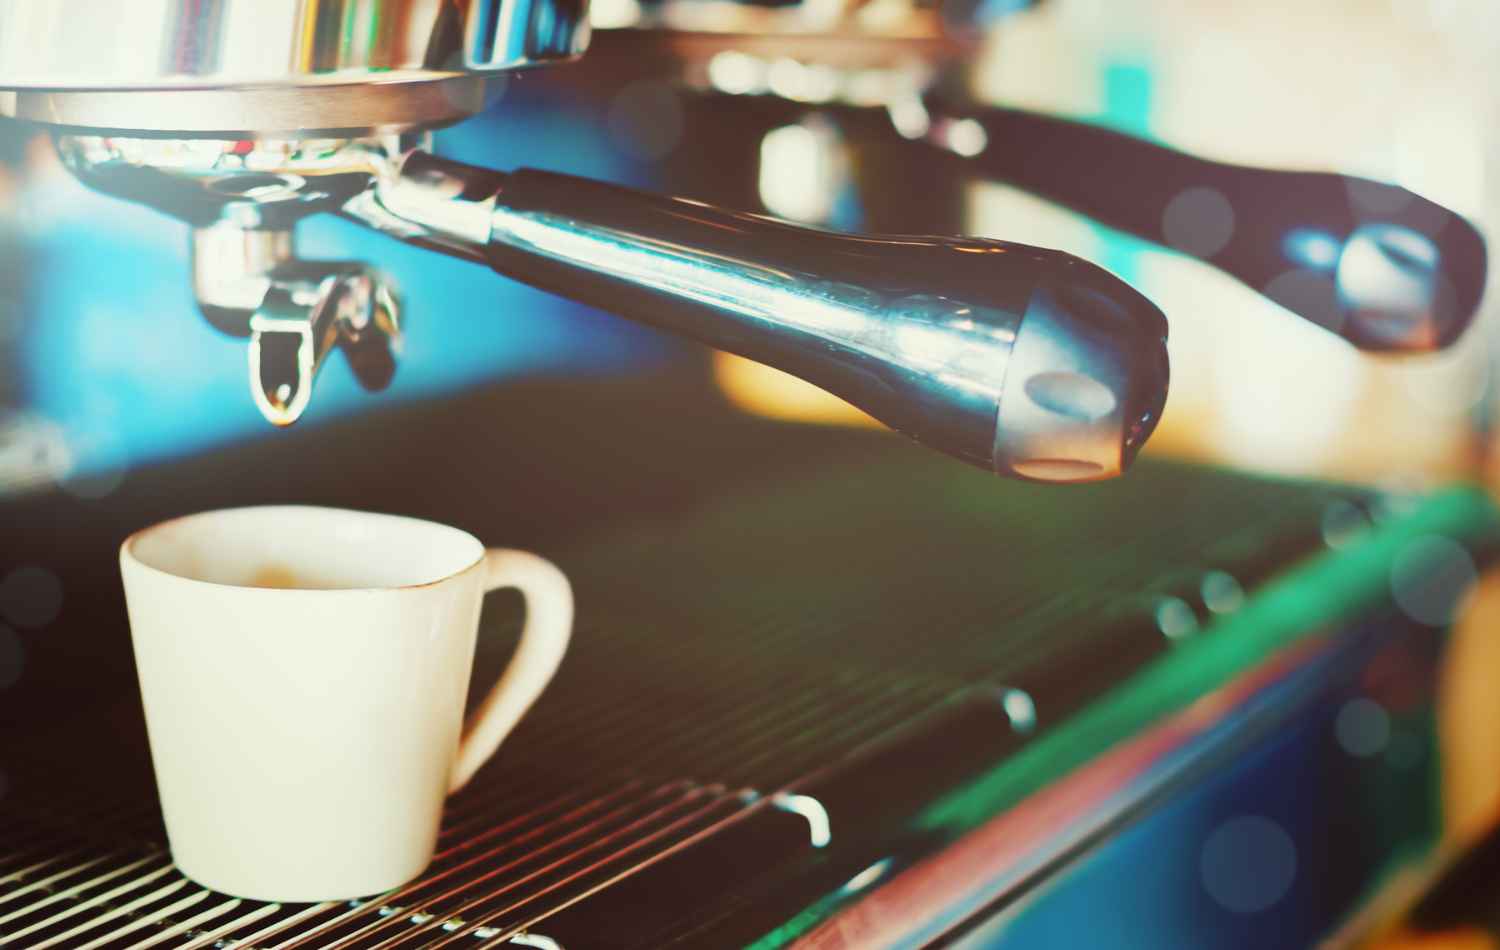 אוהבי הקפה חוגגים: כיצד תחוו את הארומה והעושר של פולים טחונים טריים עם מכונת הקפה שלכם?